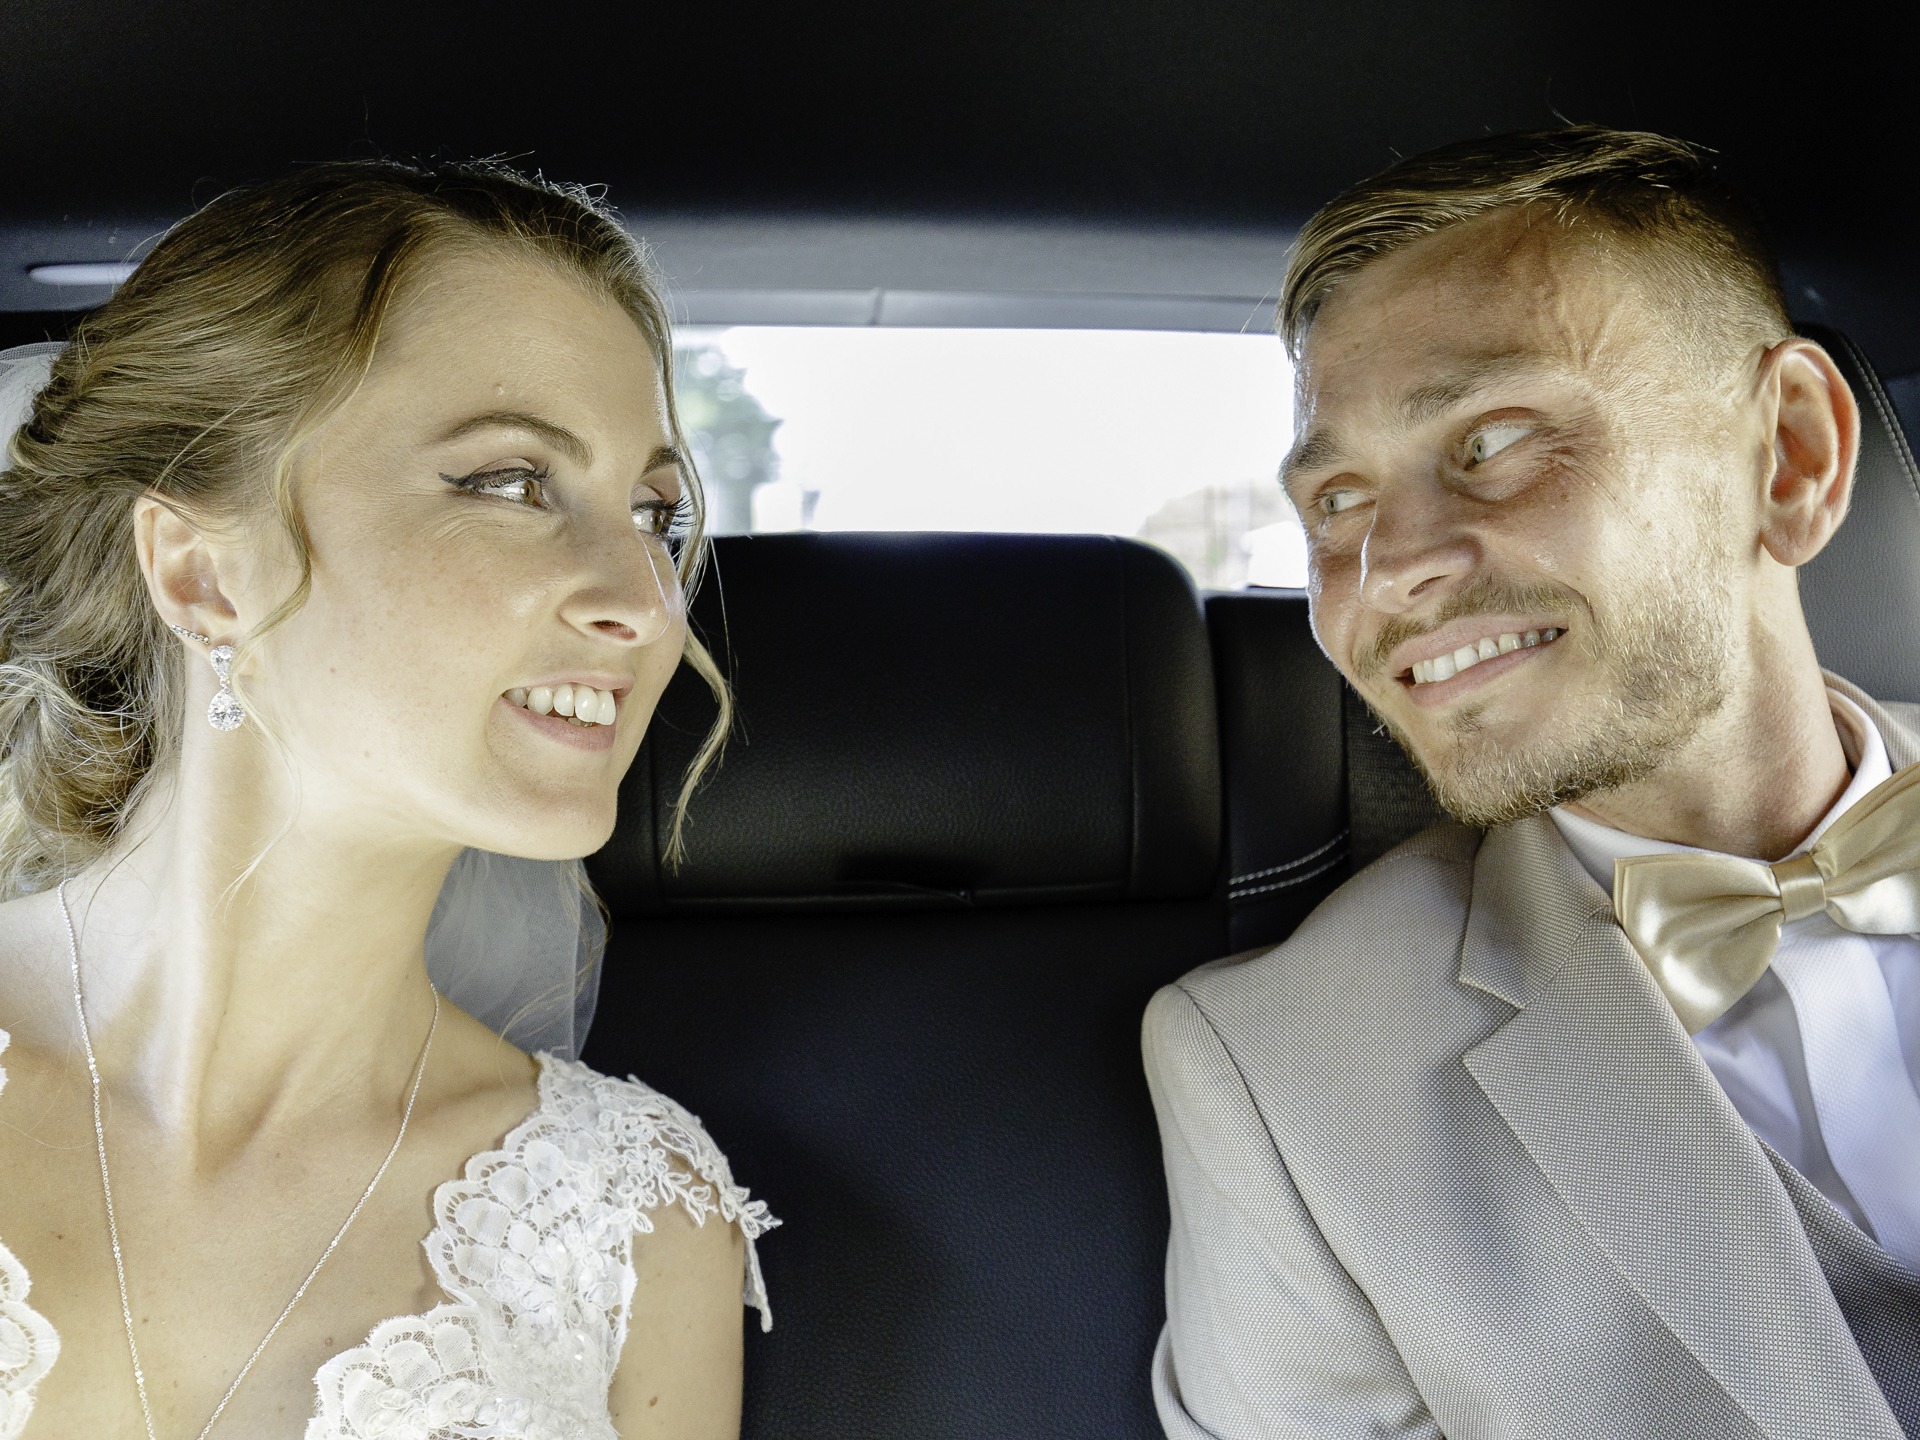 Un couple de marié se regarde amoureusement dans une voiture.